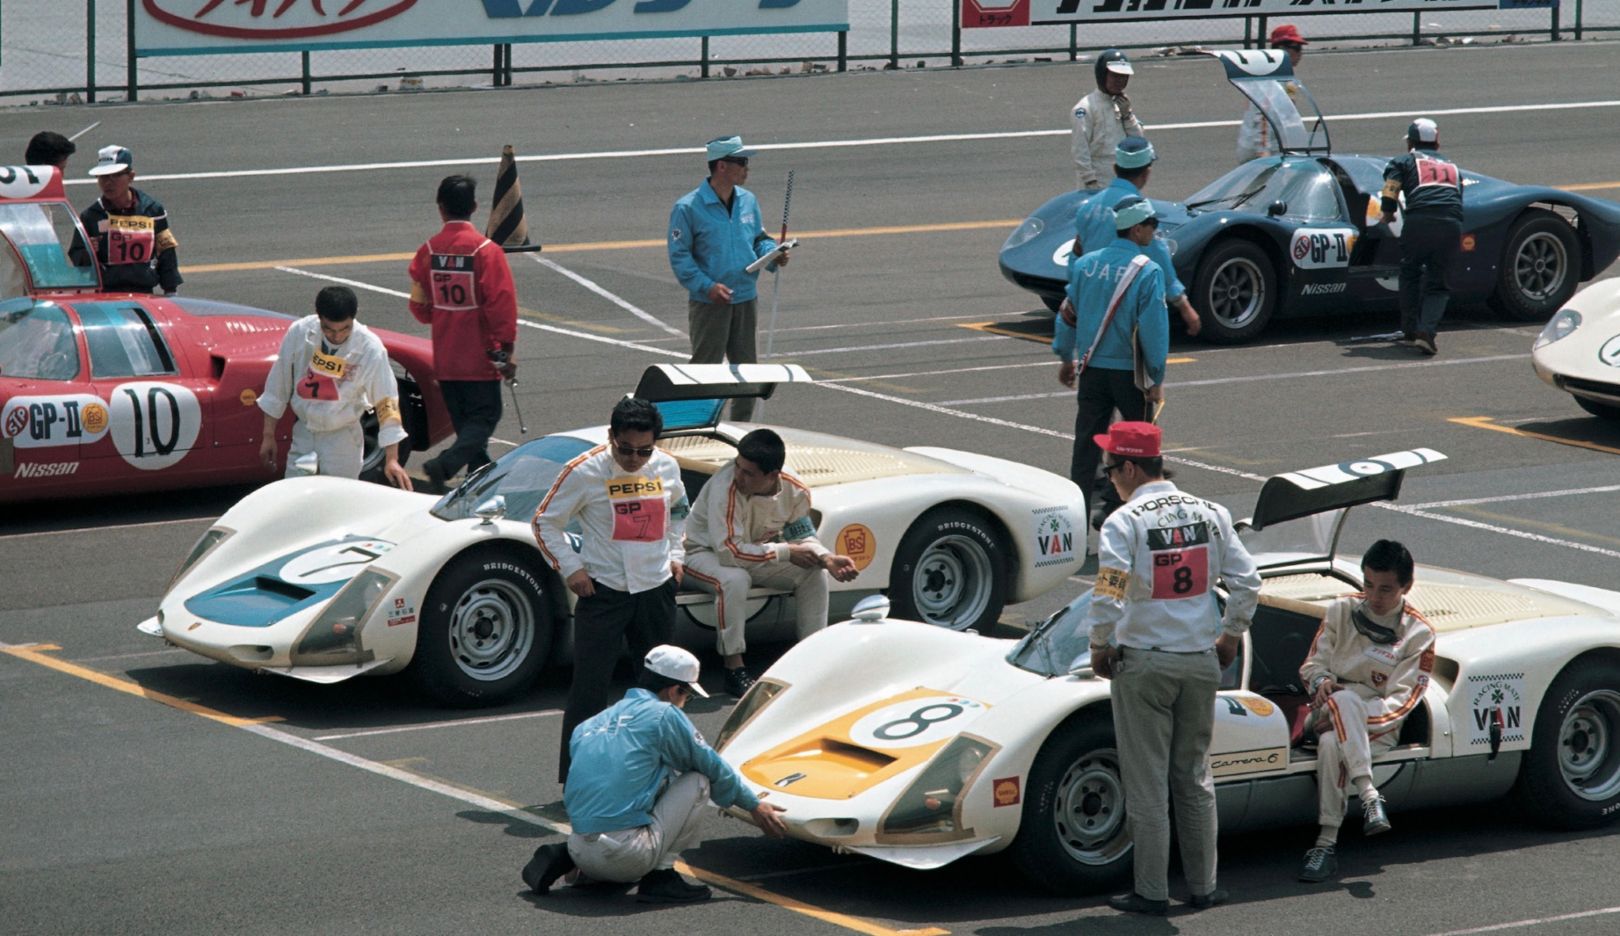 Vor dem Rennrundenrekord: Beim Großen Preis von Japan auf dem Fuji Speedway fährt Tetsu Ikuzawa im Mai 1967 mit dem Porsche 906 Carrera 6 (Startnummer 8) eine Runde in 2:00,800 Minuten. 